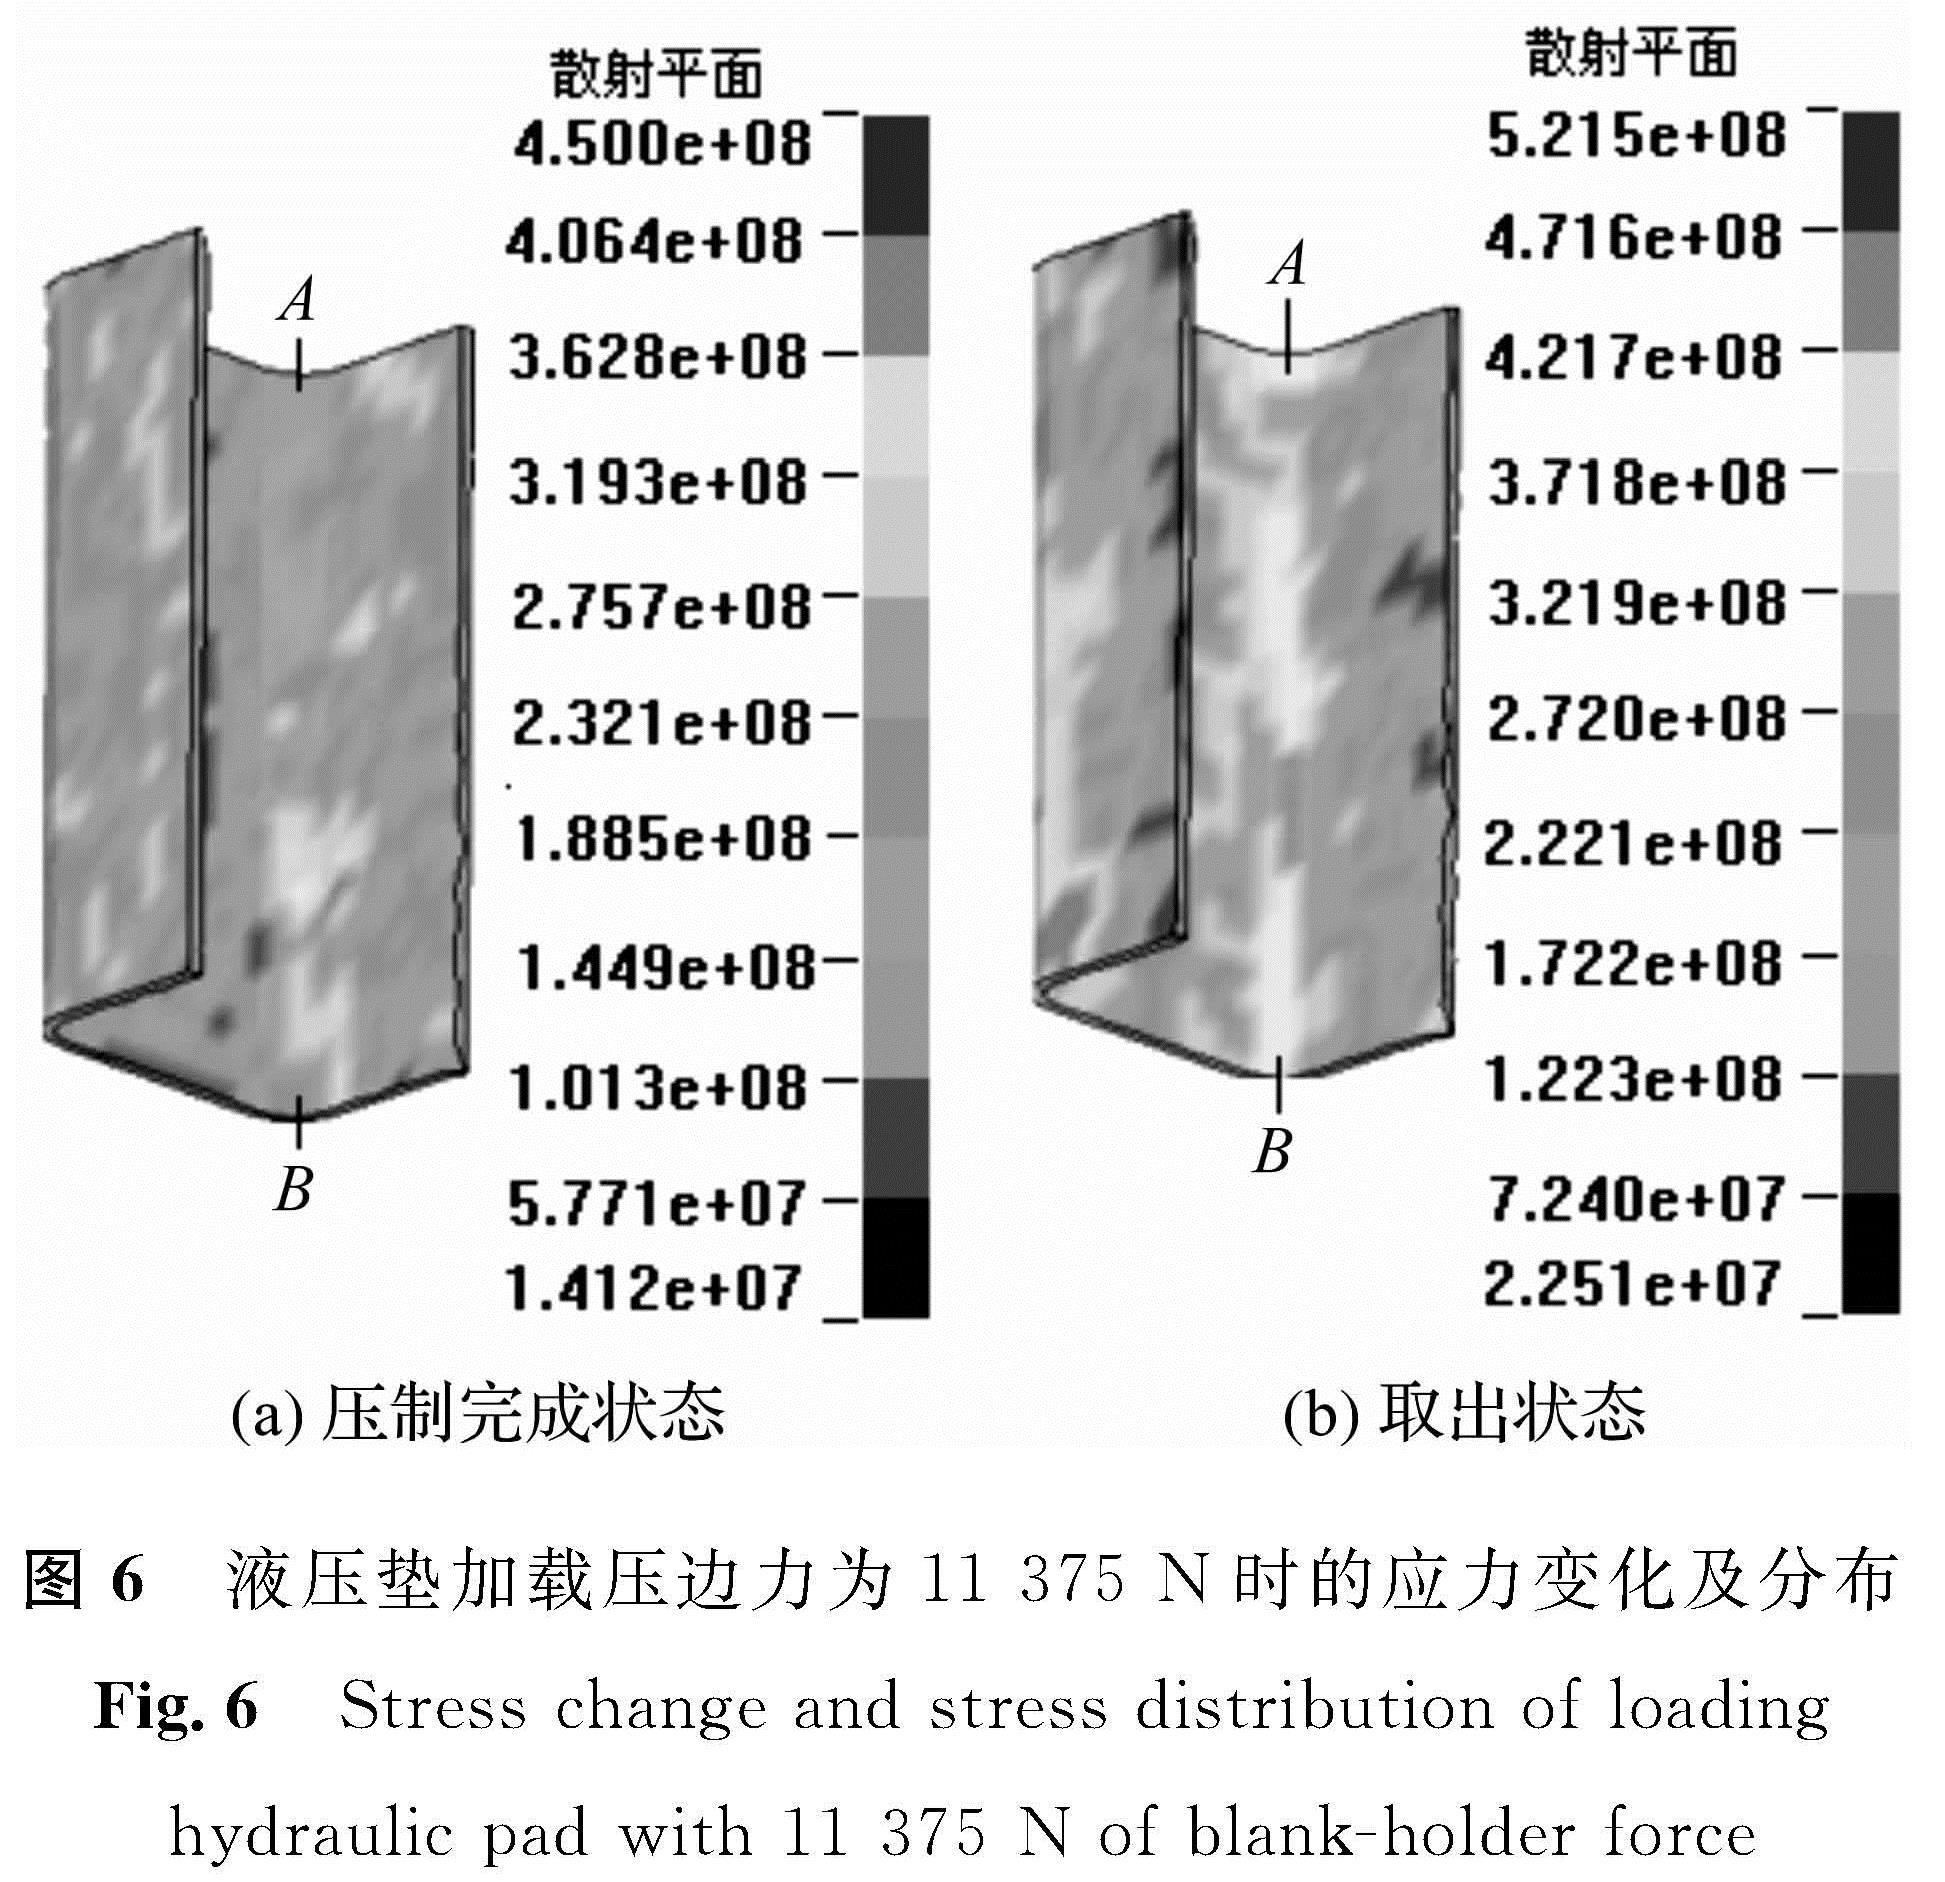 图6 液压垫加载压边力为11 375 N时的应力变化及分布<br/>Fig.6 Stress change and stress distribution of loading hydraulic pad with 11 375 N of blank-holder force